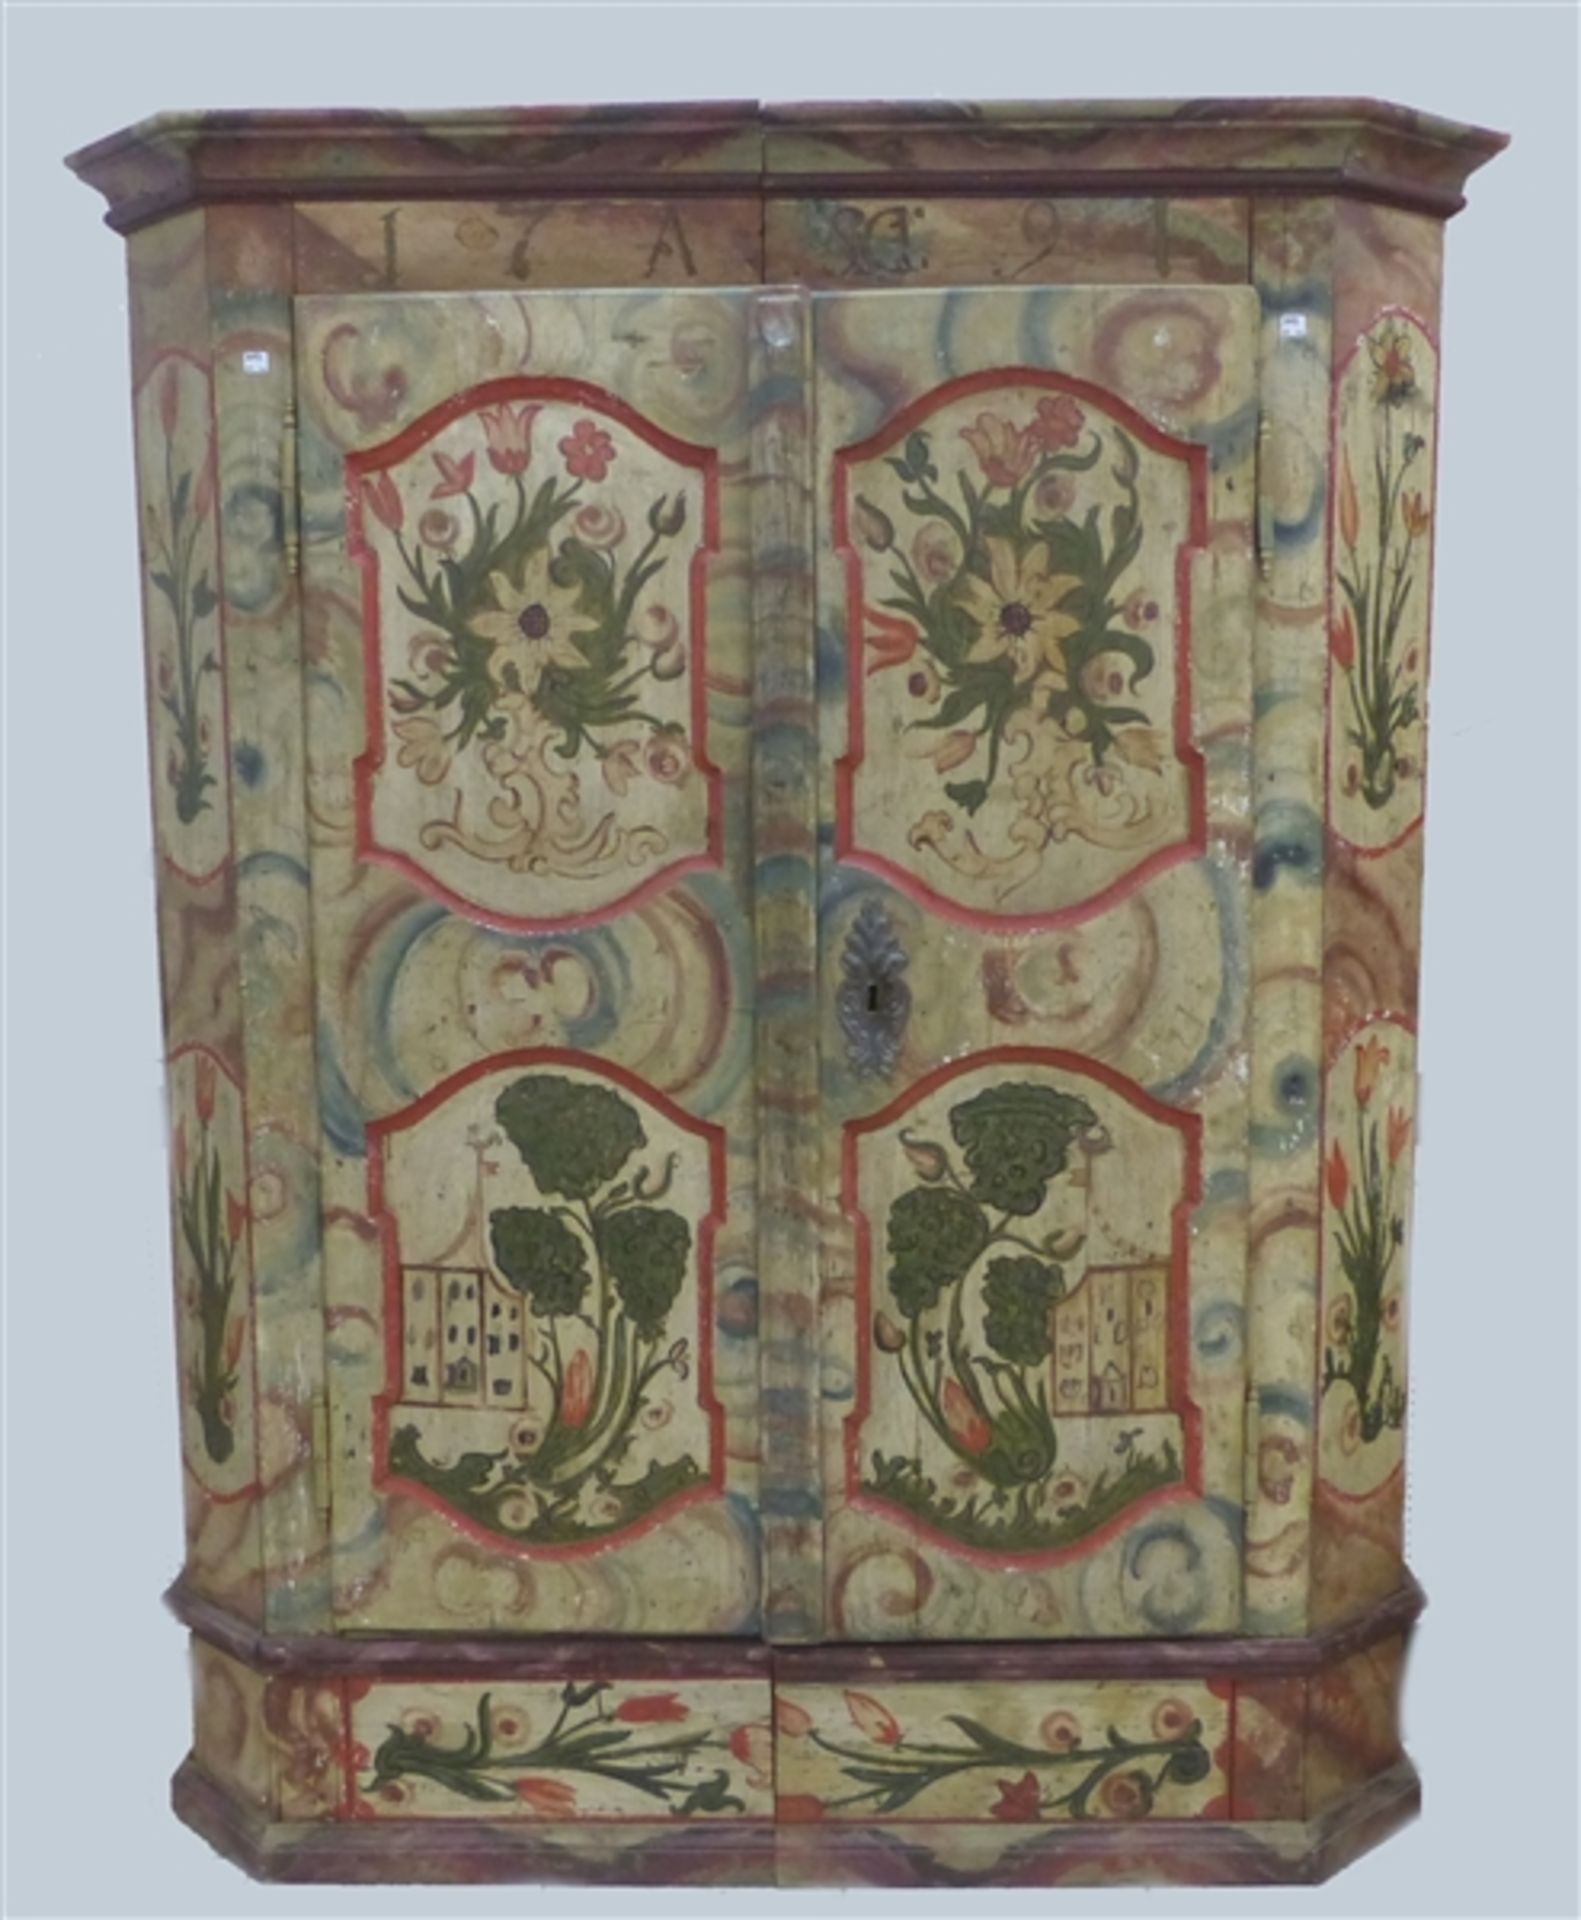 Bauernschrank, um 1800 Weichholz, 2-türig, Kassettenfüllungen, florale Bemalung, h 175 cm, b 142 cm,